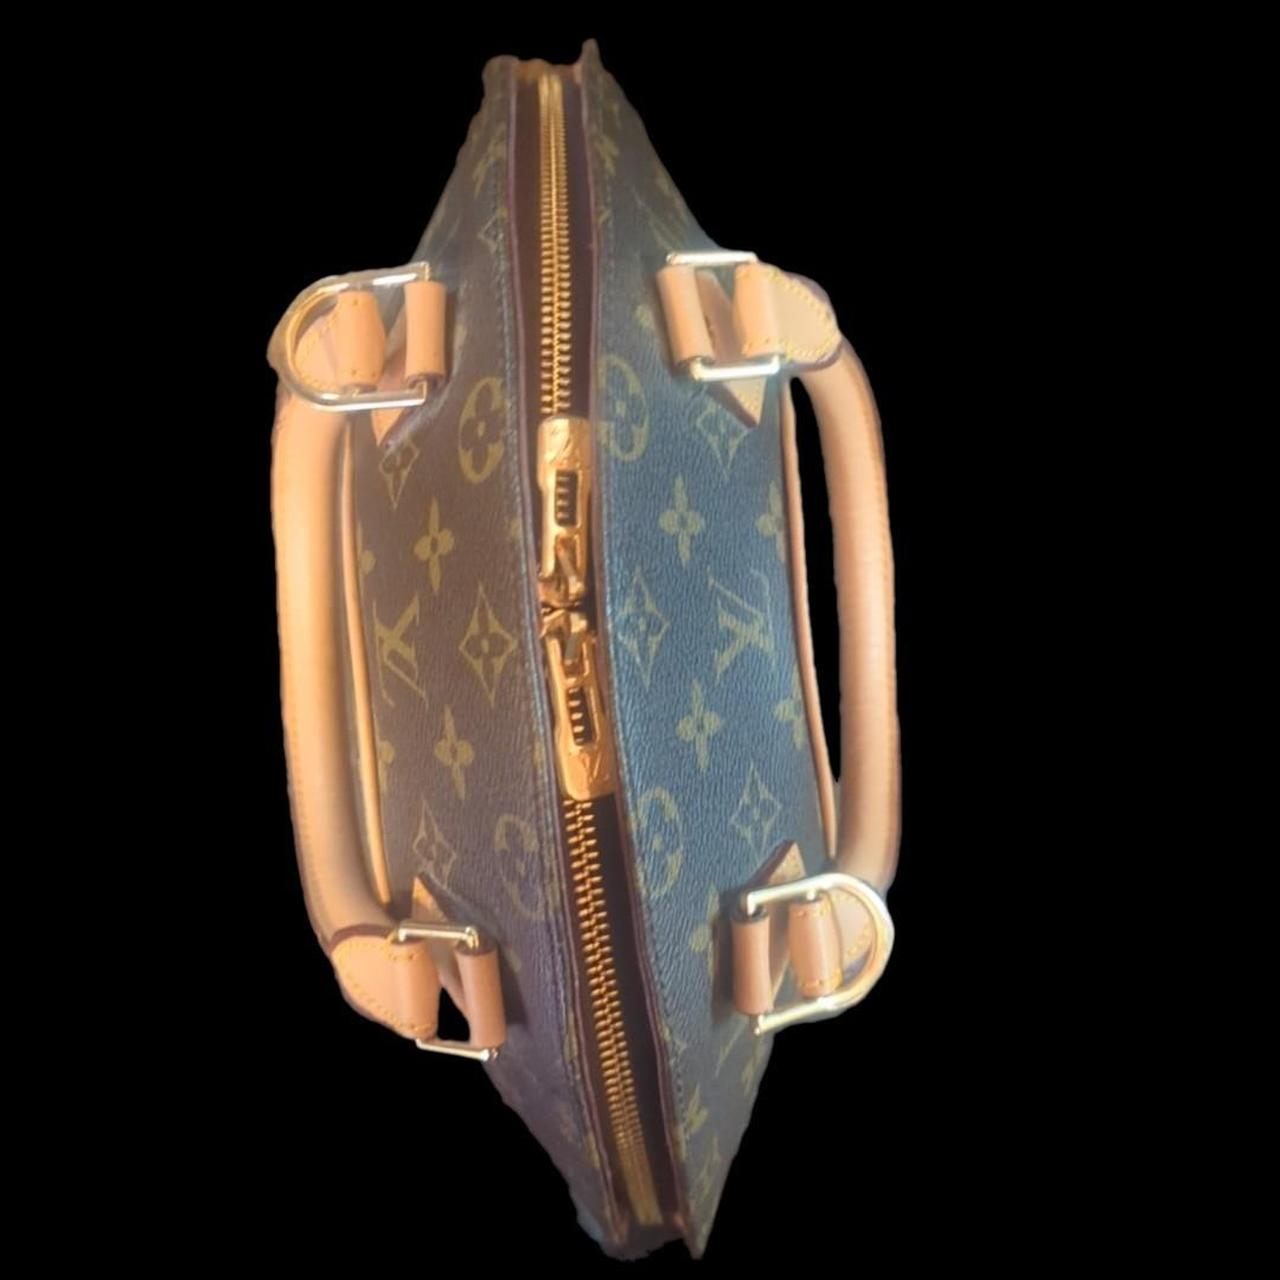 Louis Vuitton Ellipse MM Handbag Size: Med Aprx: - Depop